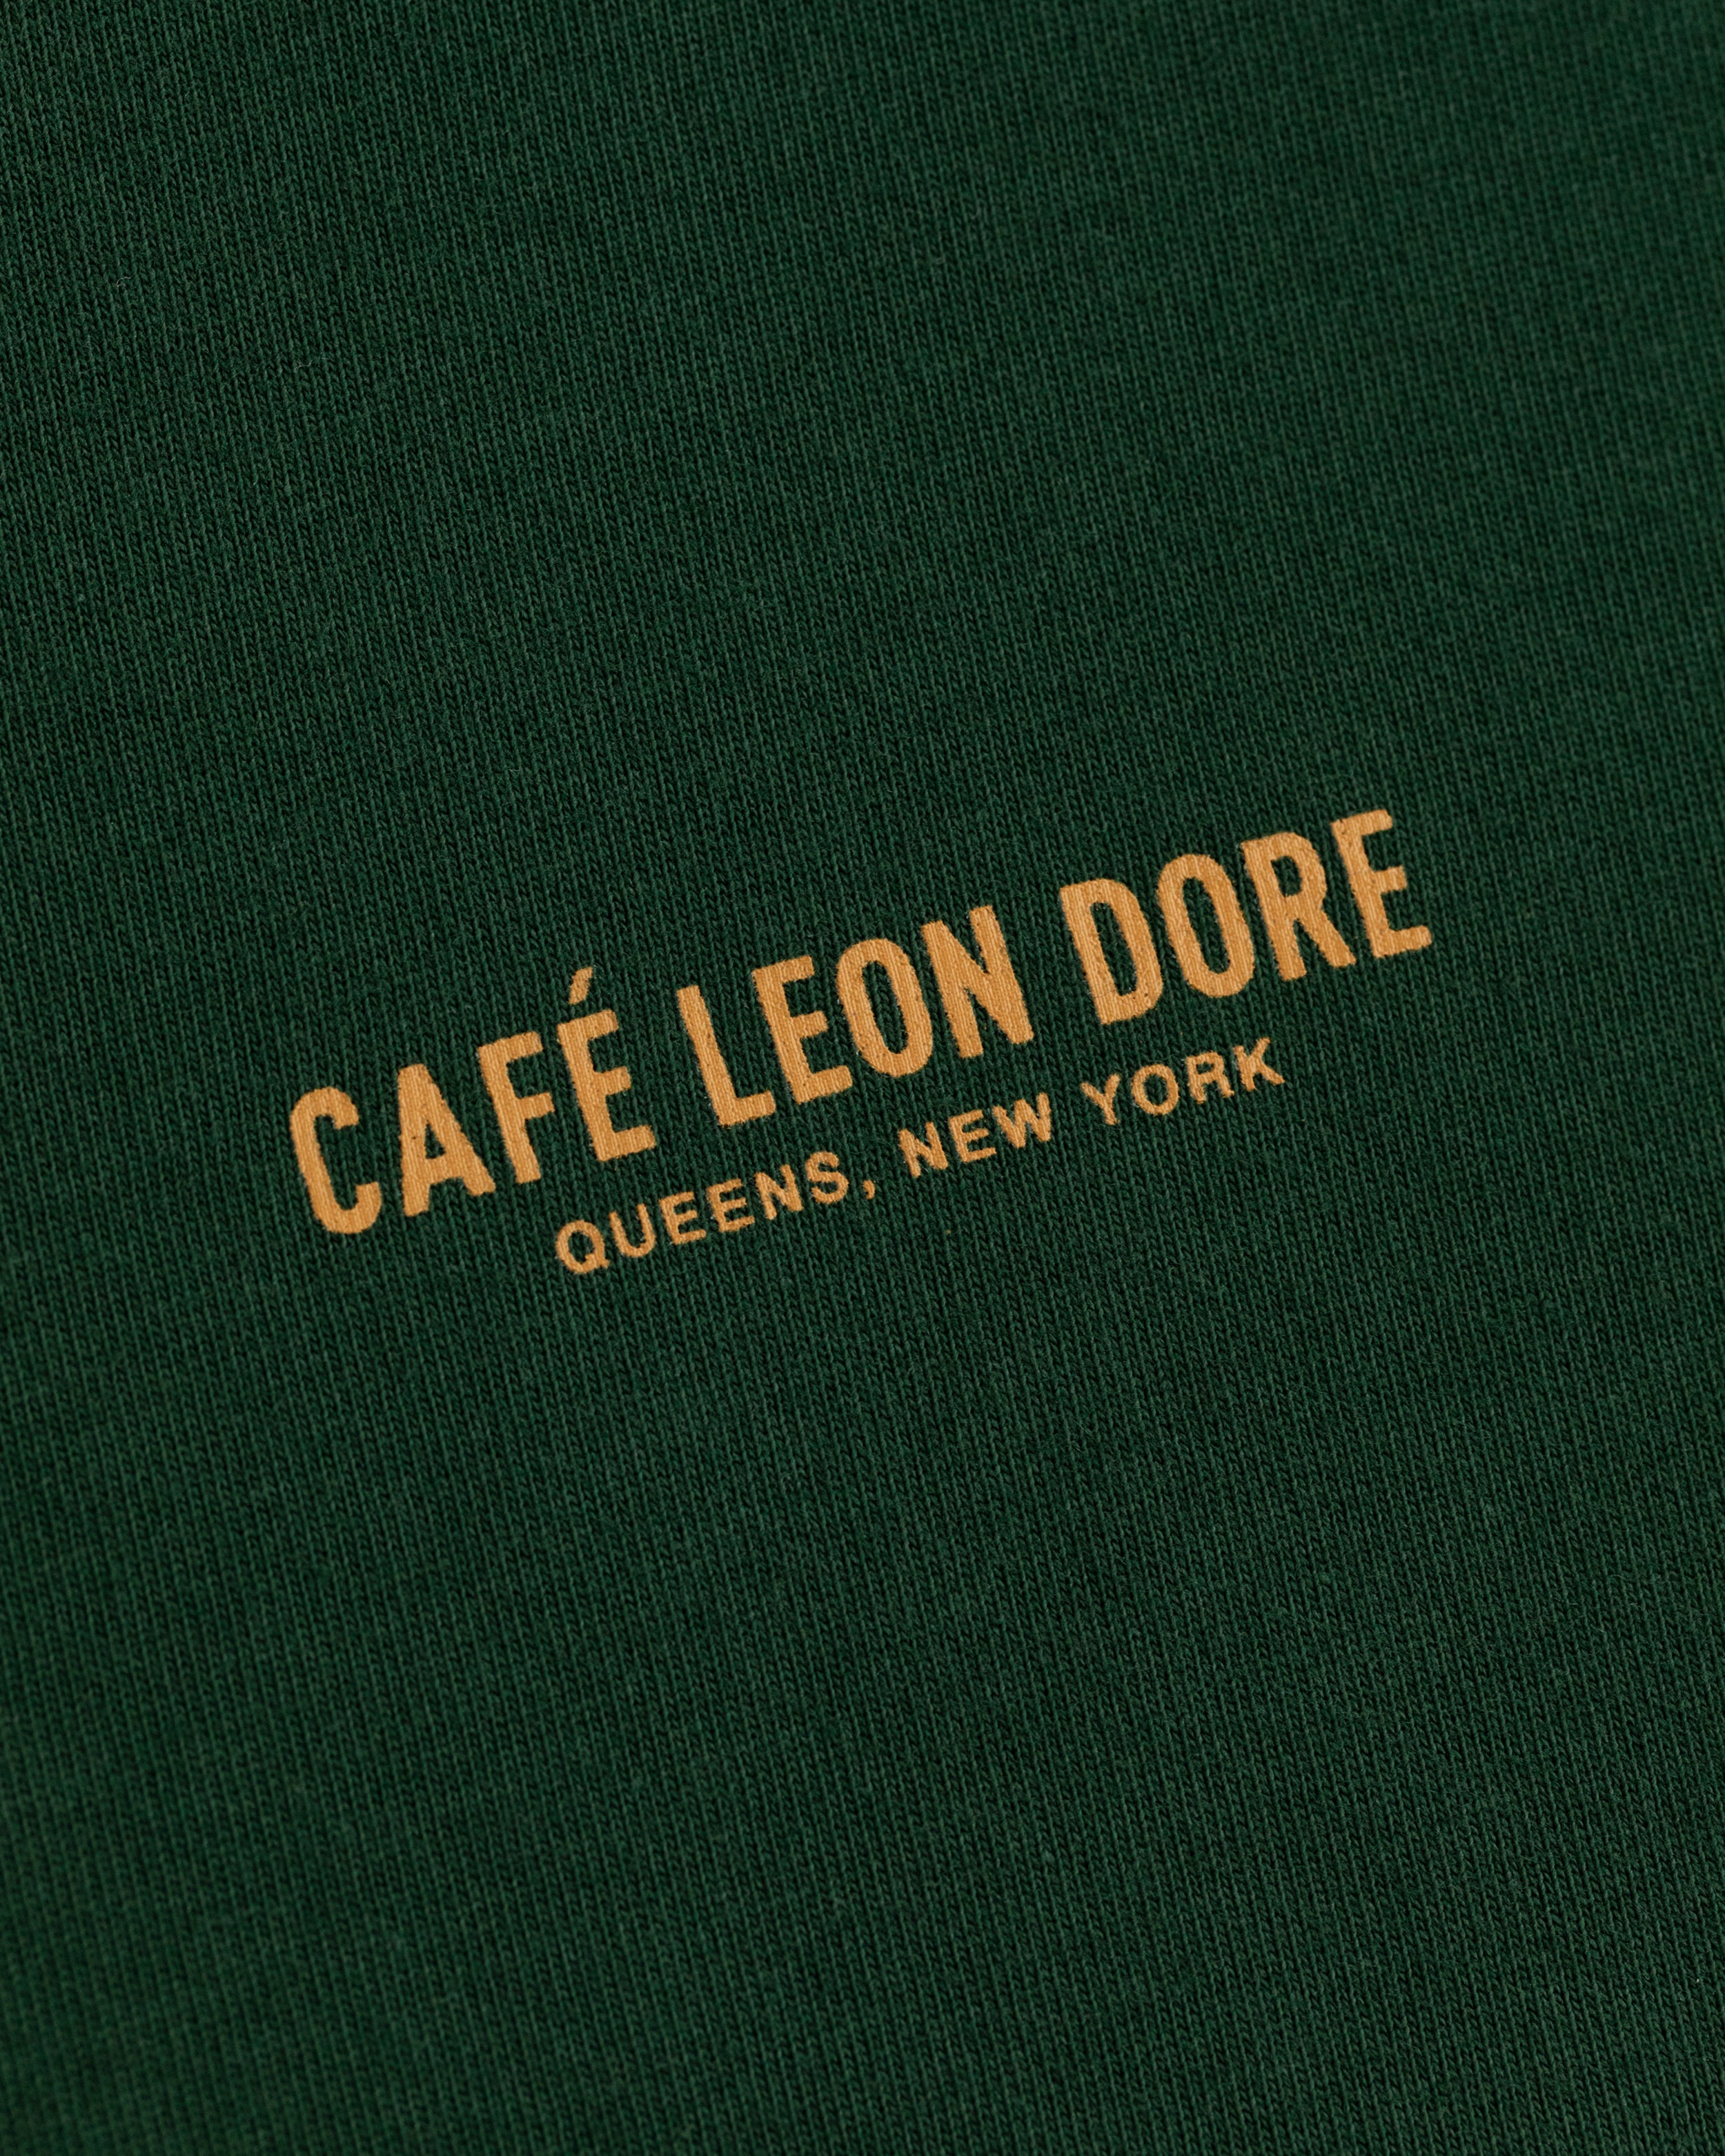 Café Leon Dore Logo  Tee